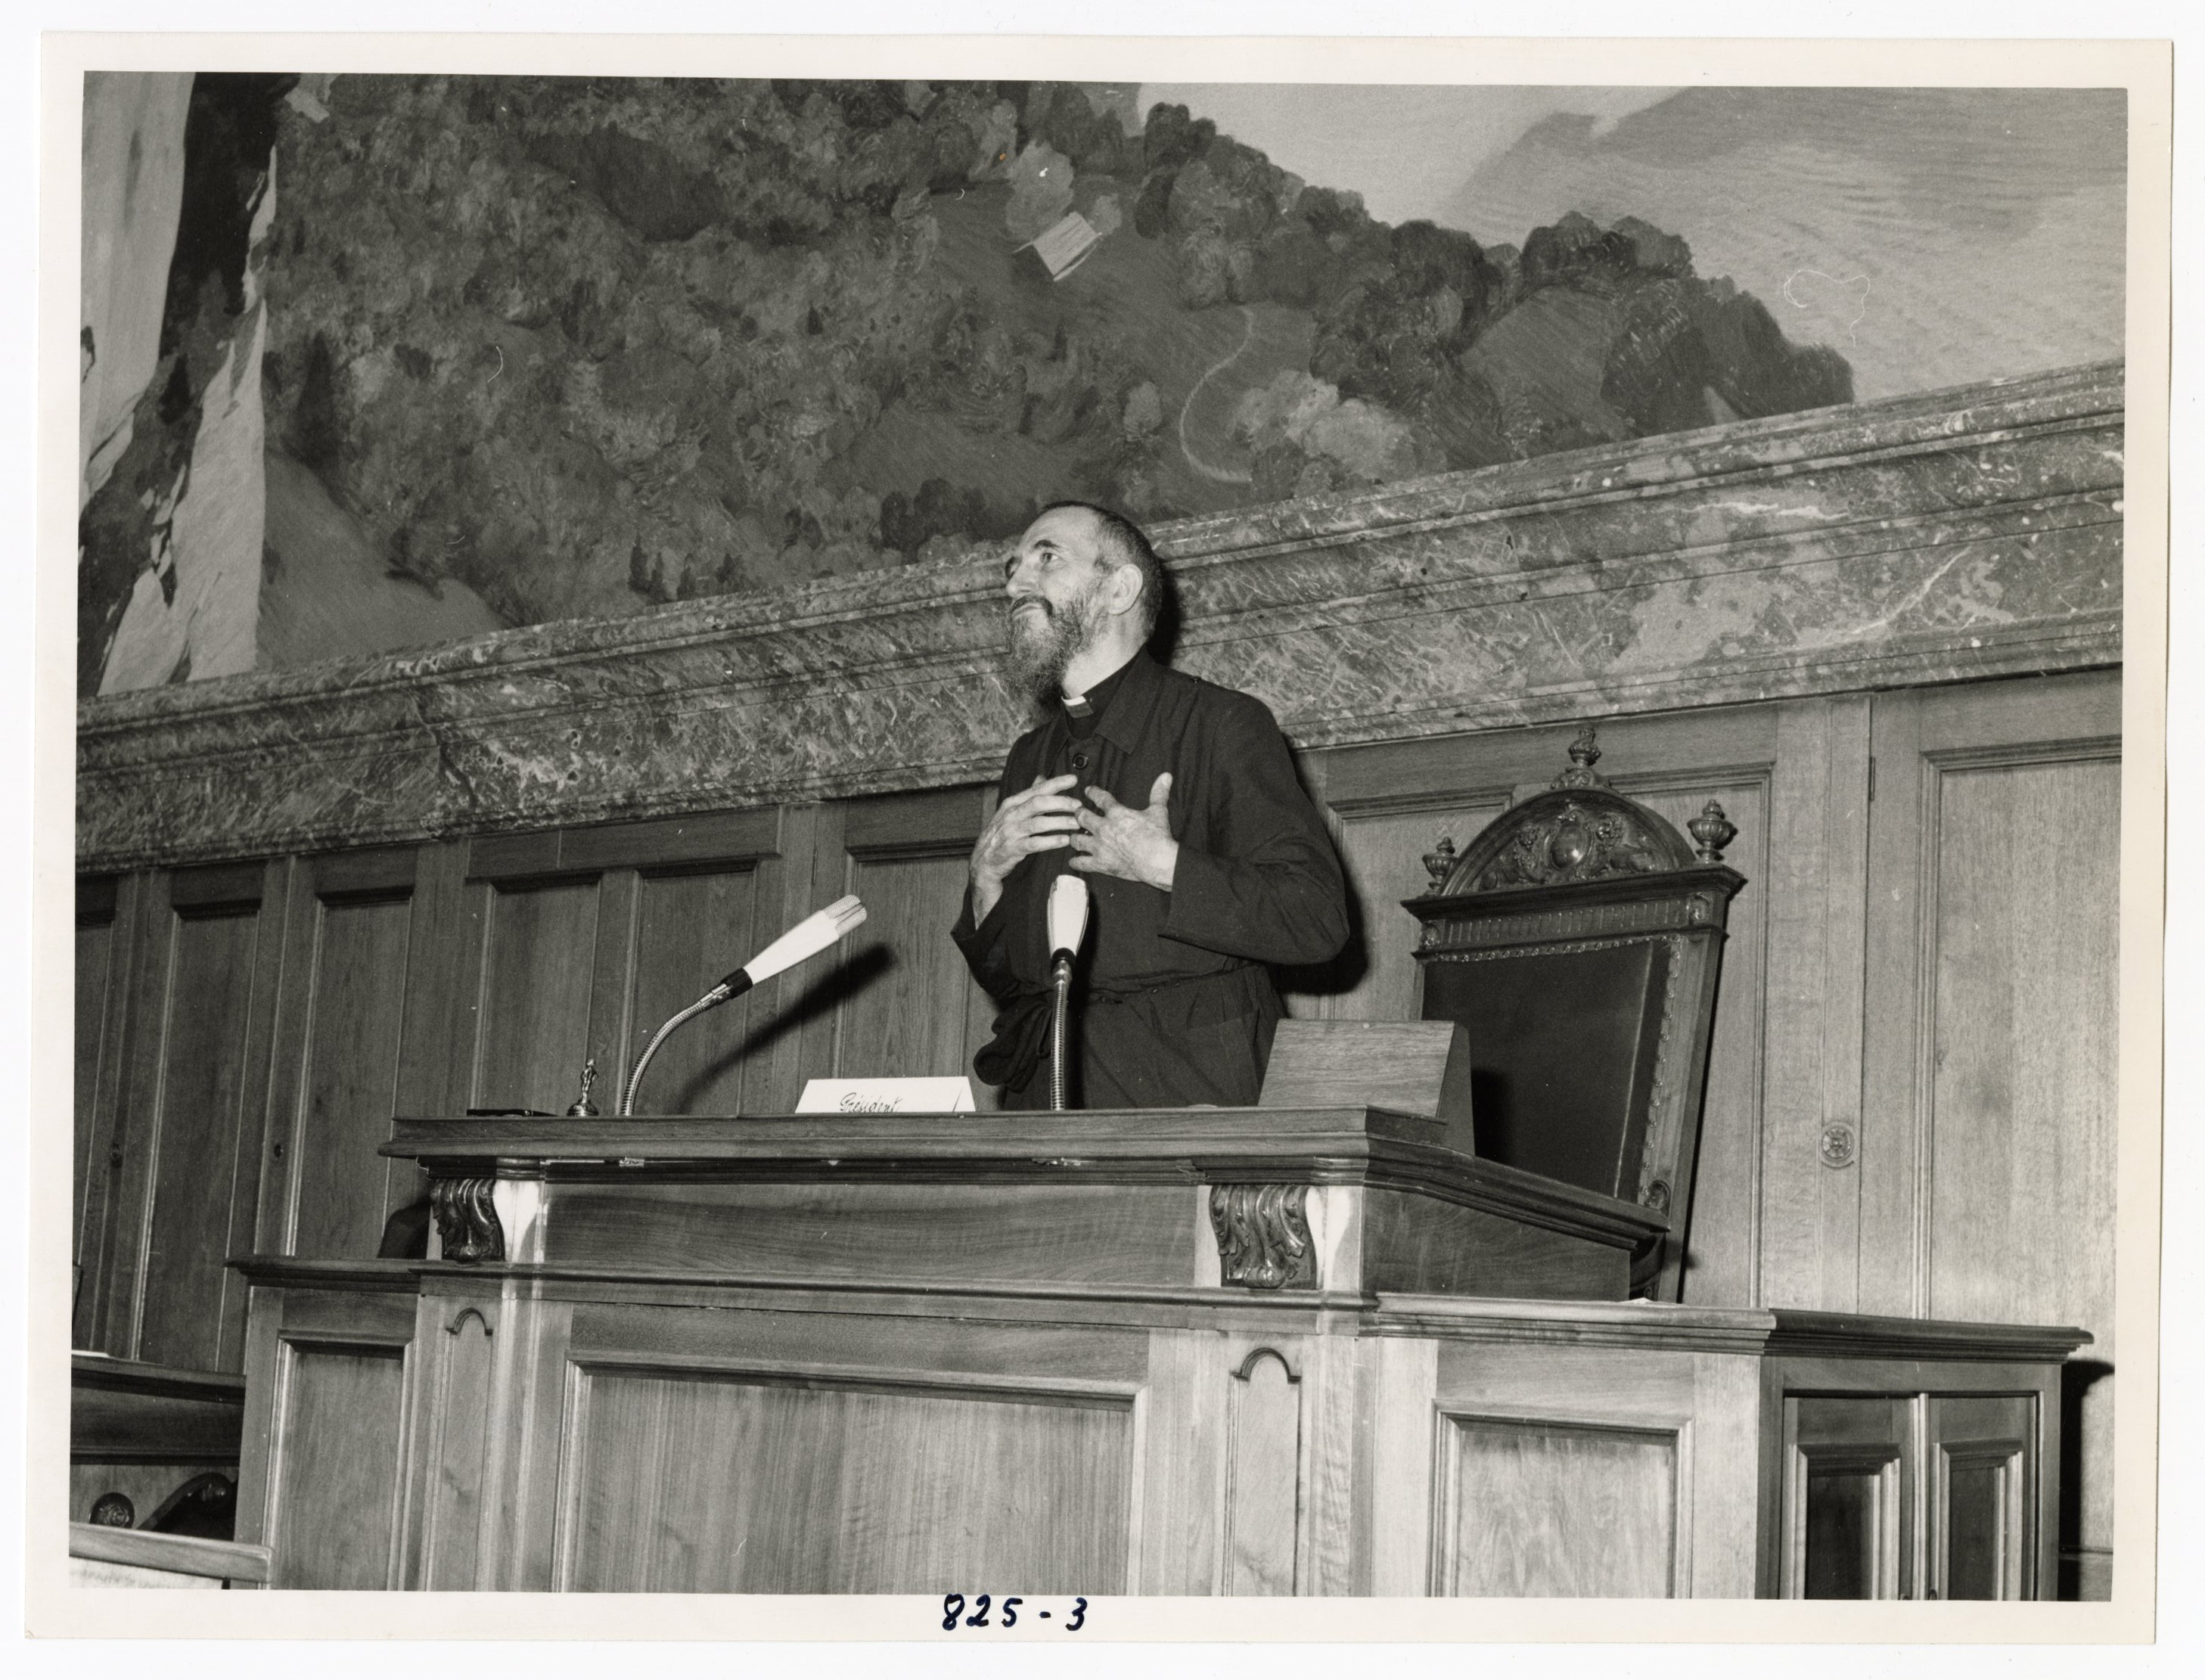 Photographie de l'abbé Pierre, présidant la première assemblée mondiale à Berne, en Suisse en 1969.